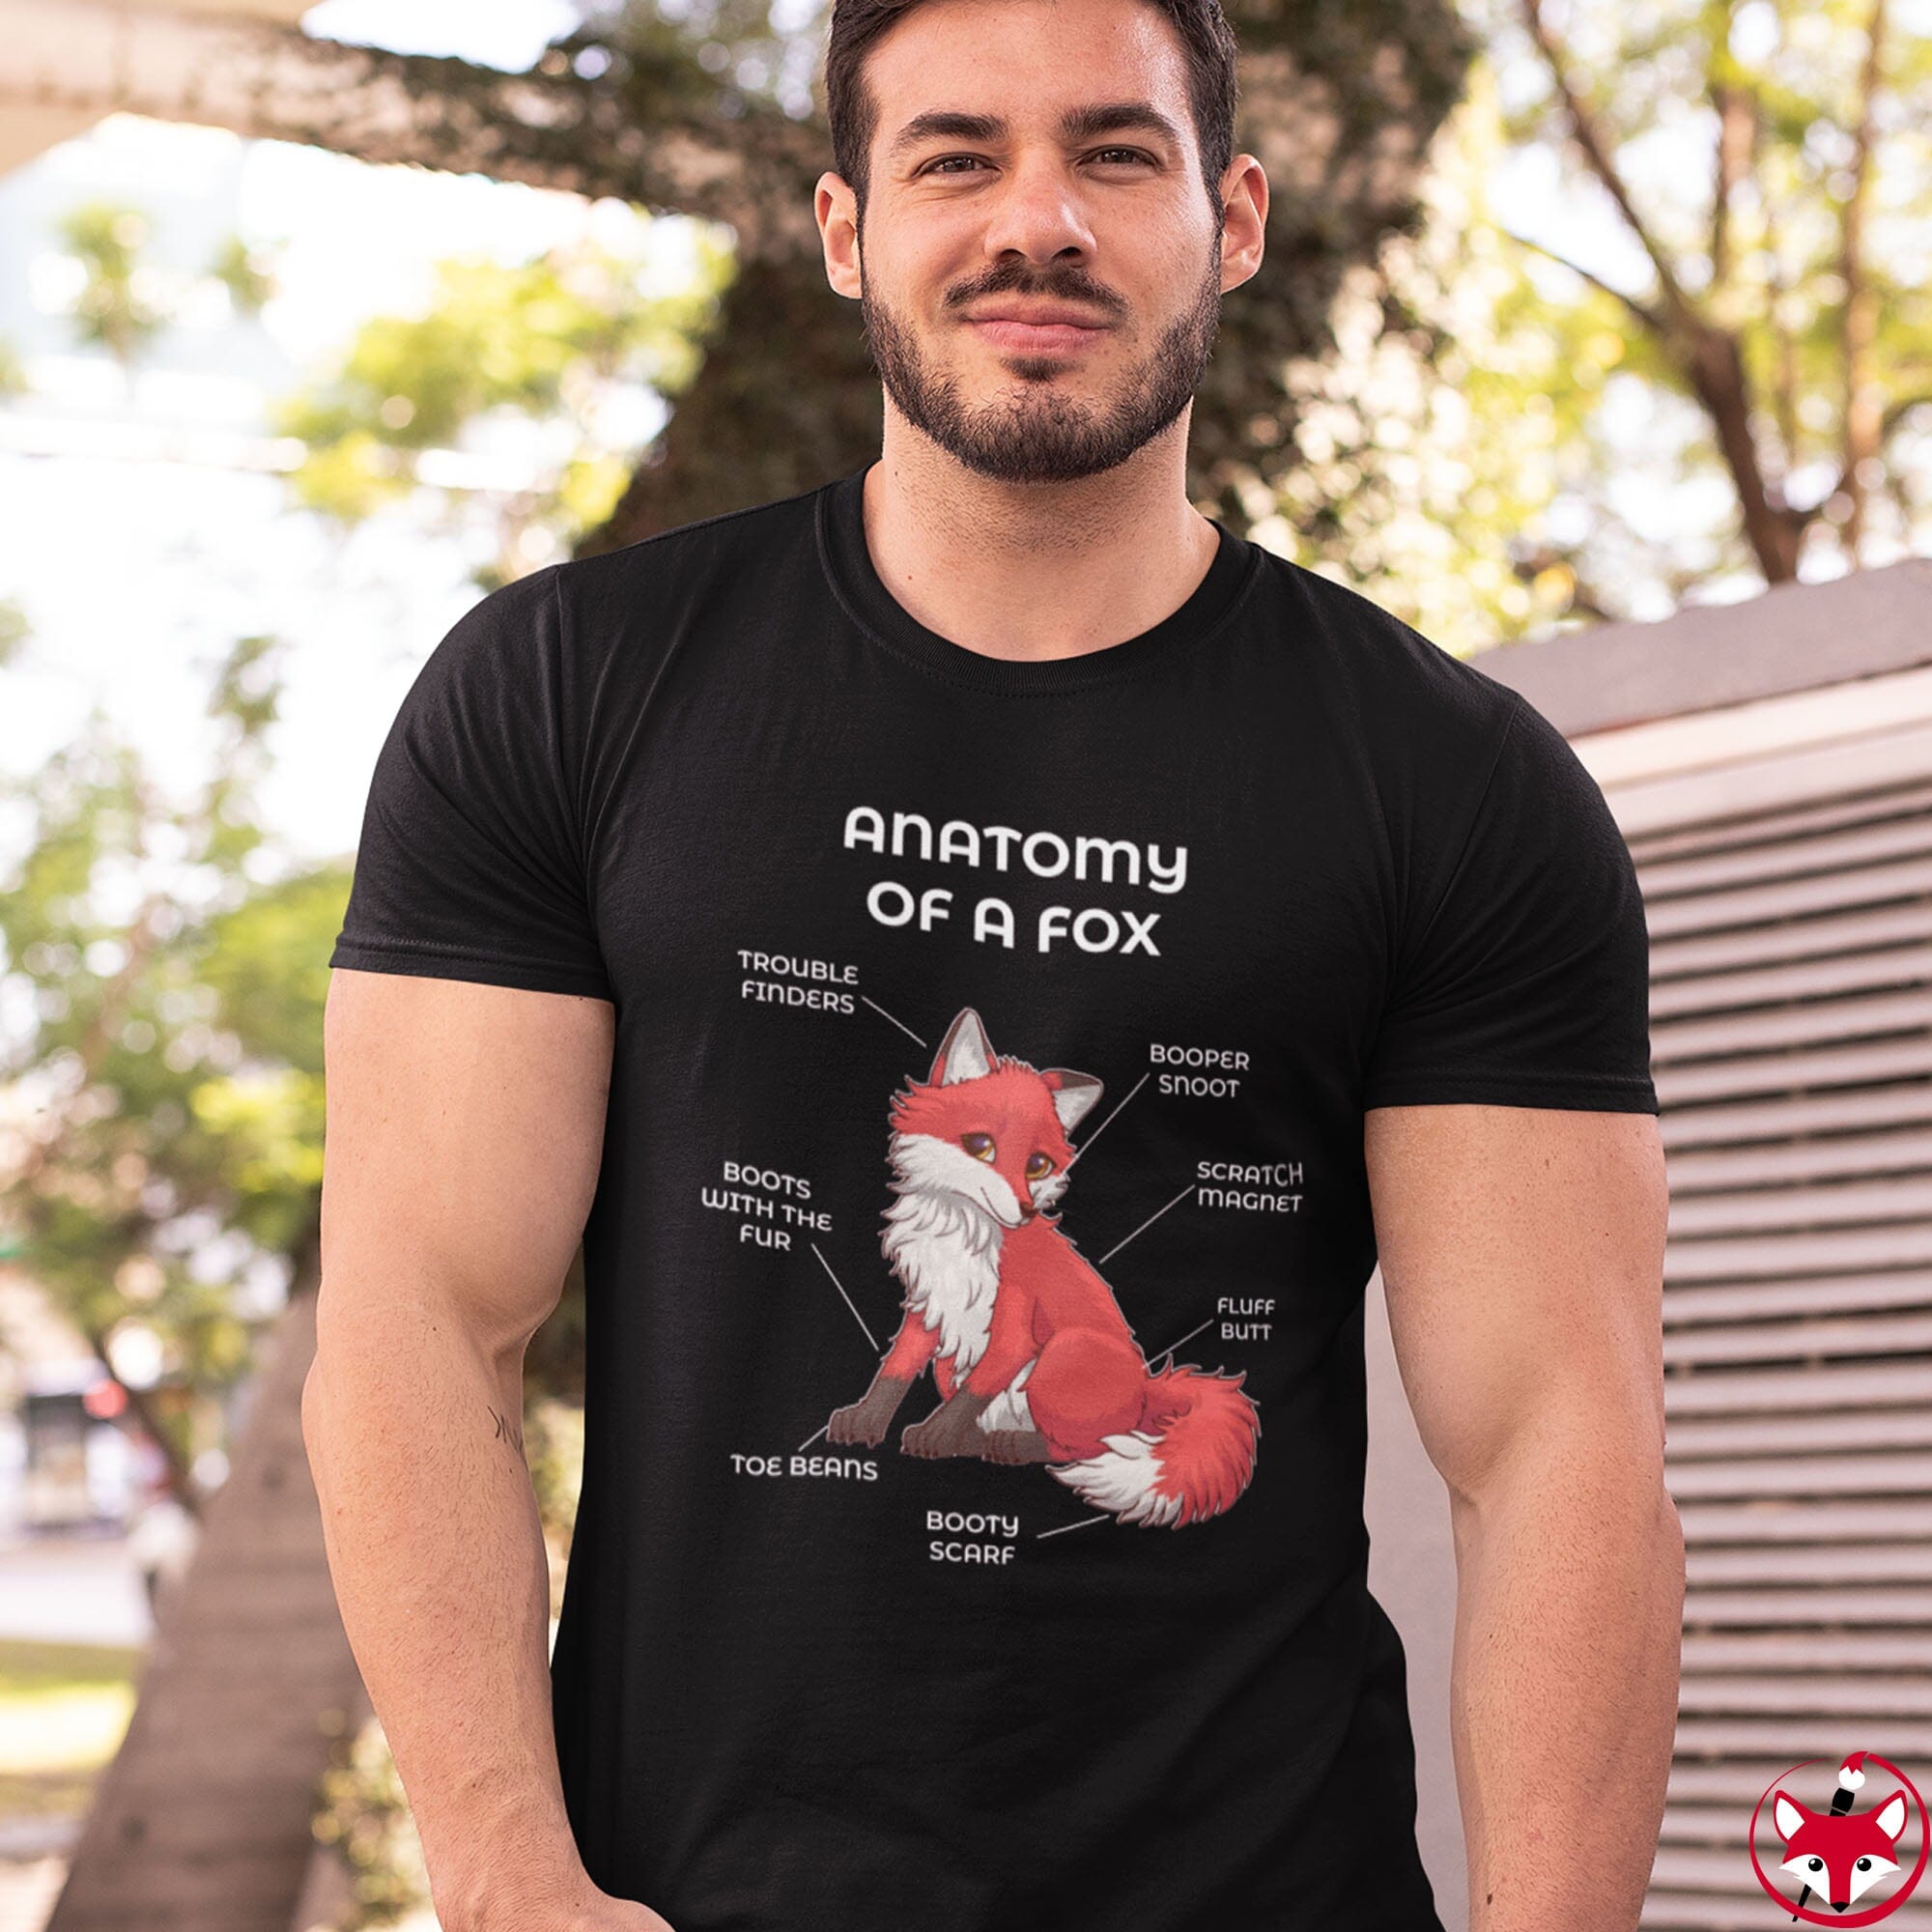 Fox Cherry - T-Shirt T-Shirt Artworktee 